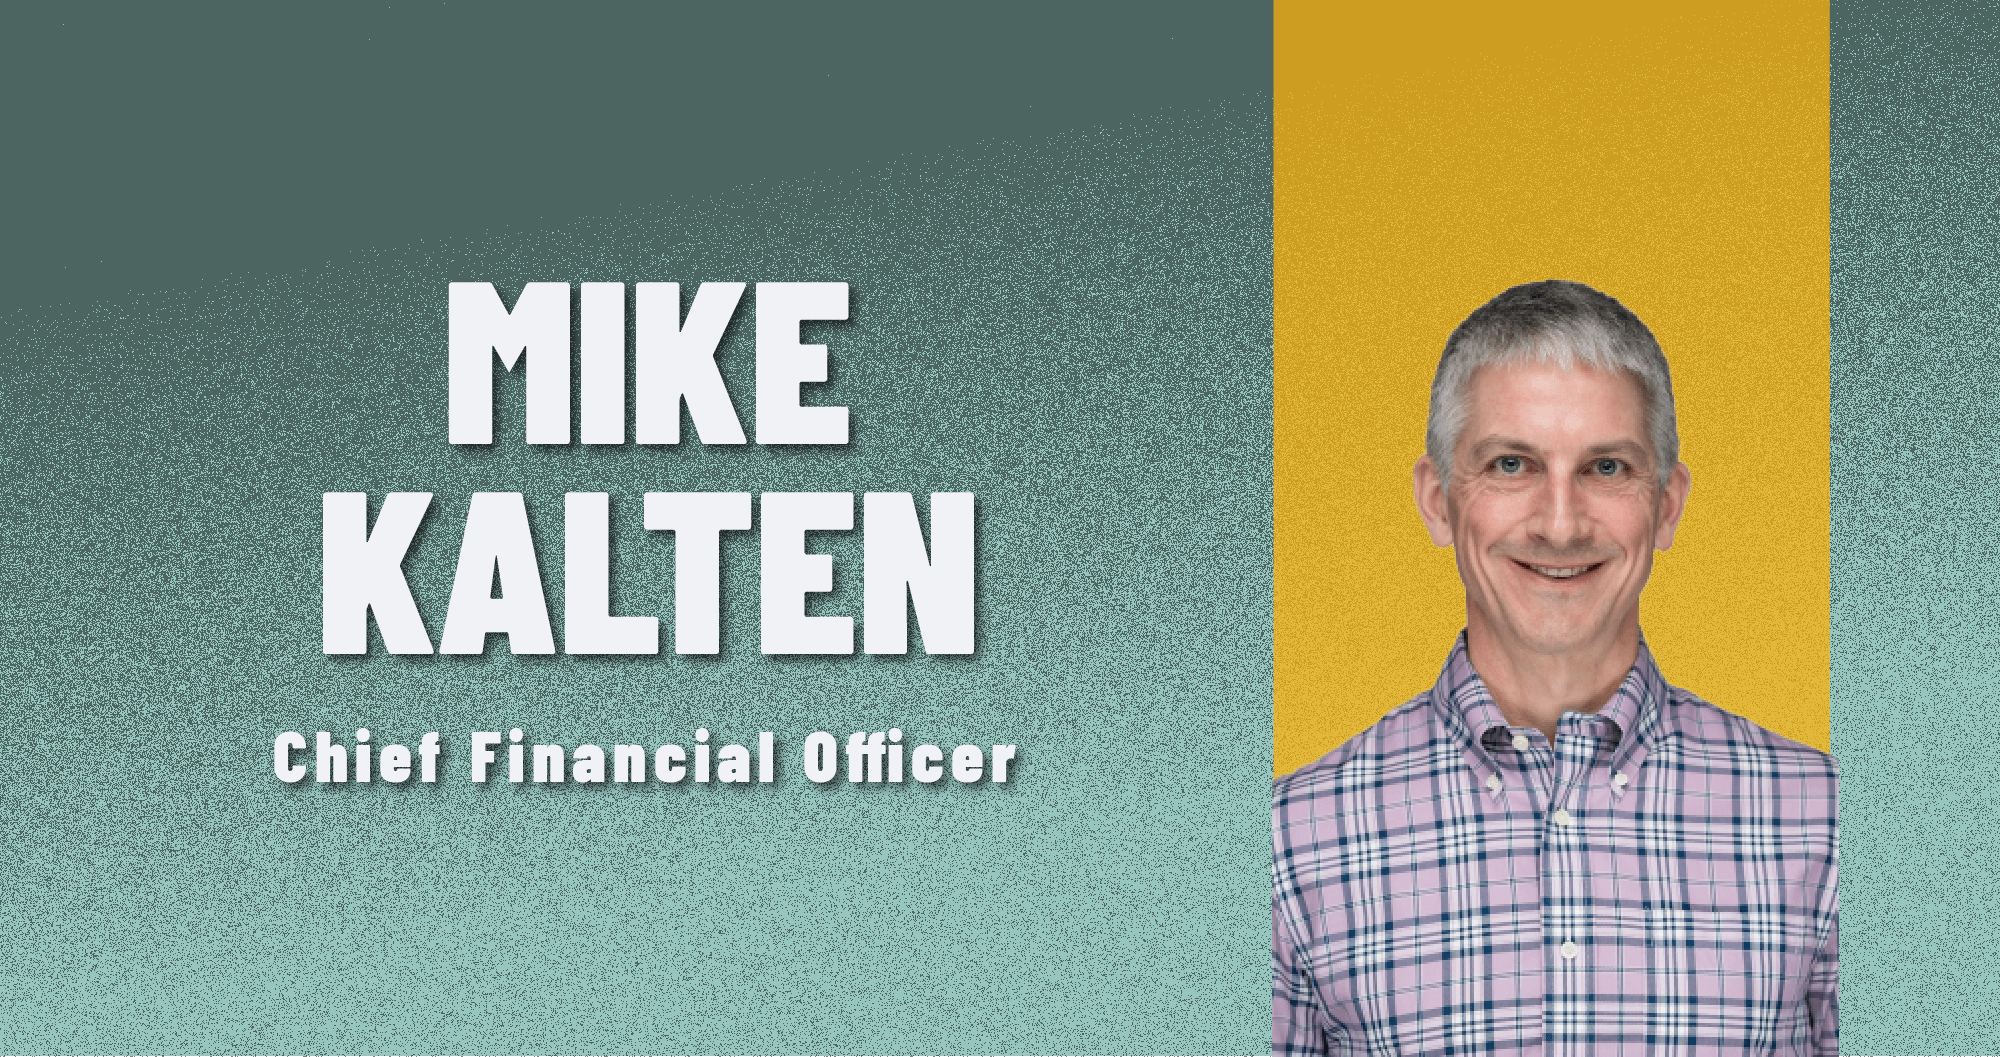 Mike Kalten X-Mode CFO Chief Financial Officer